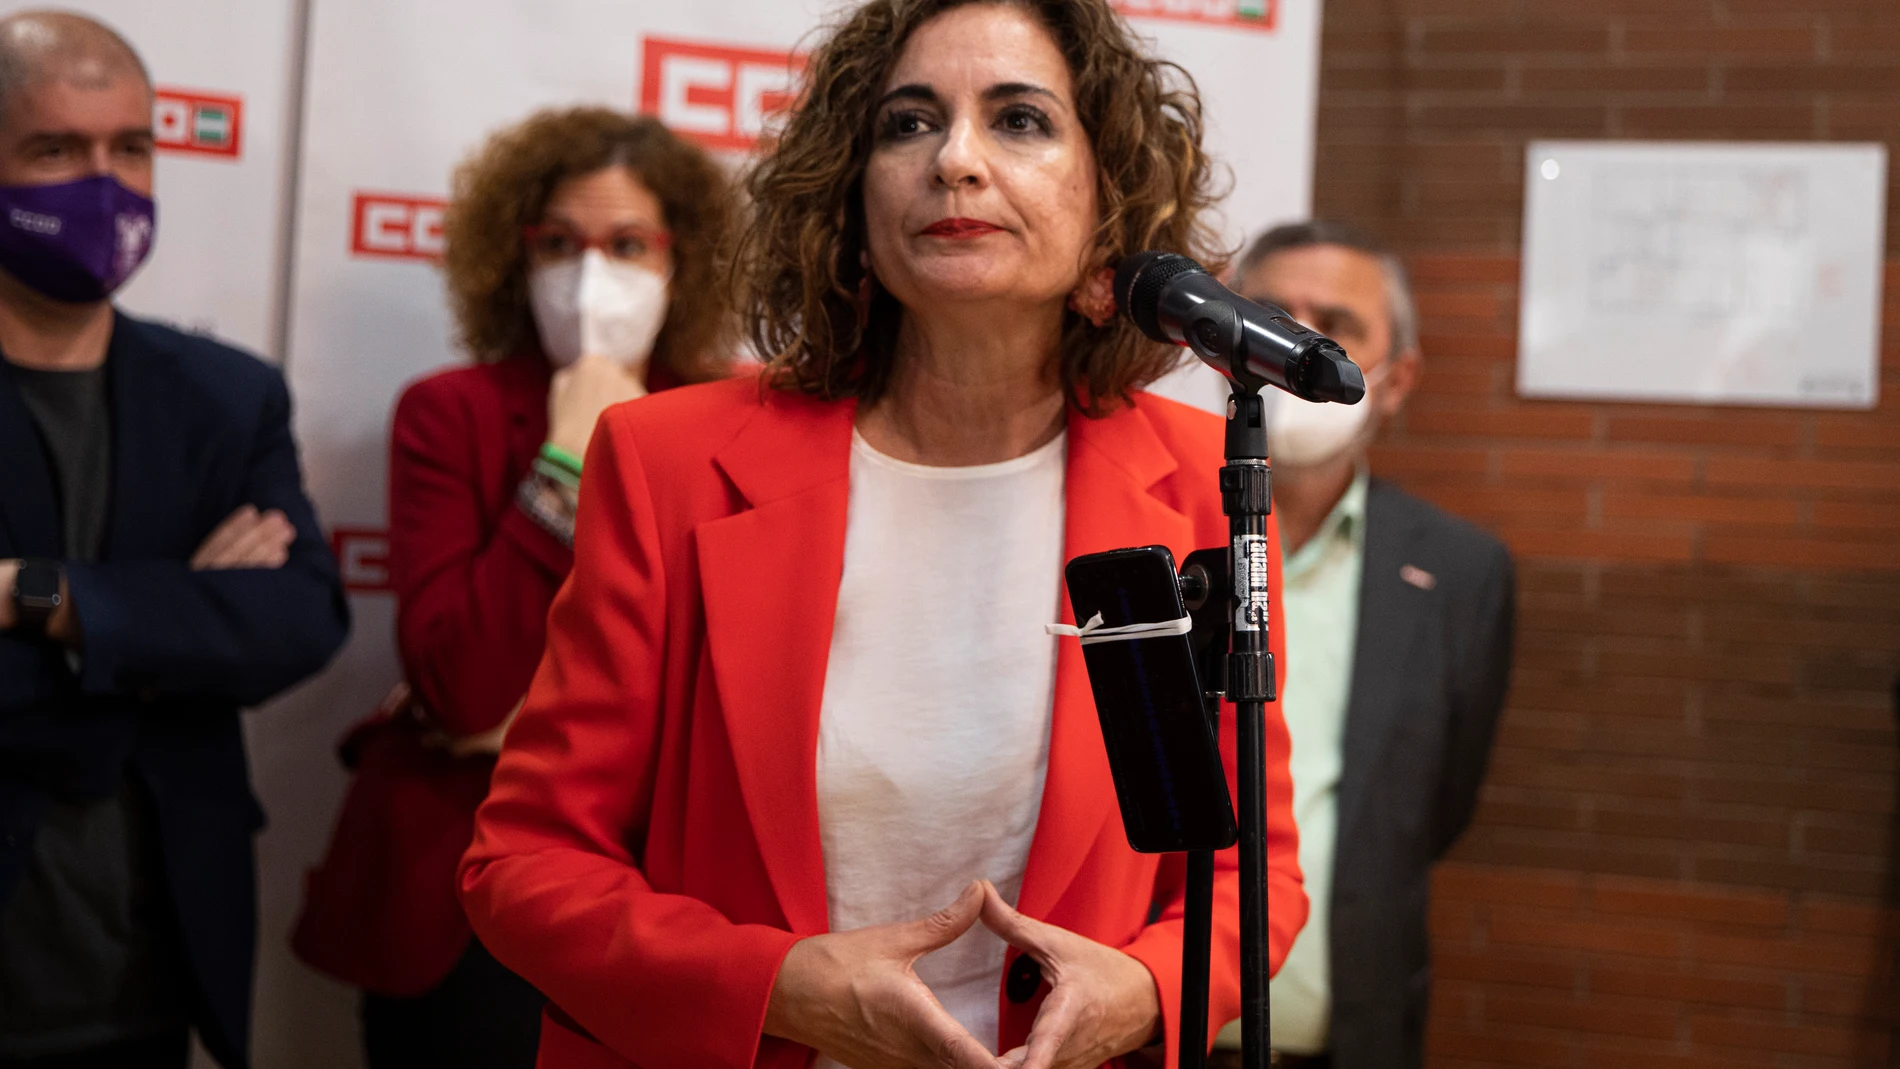 La ministra de Hacienda, María Jesús Montero, atiende a los medios de comunicación durante el acto de inauguración de la nueva sede de CC OO en Sevilla